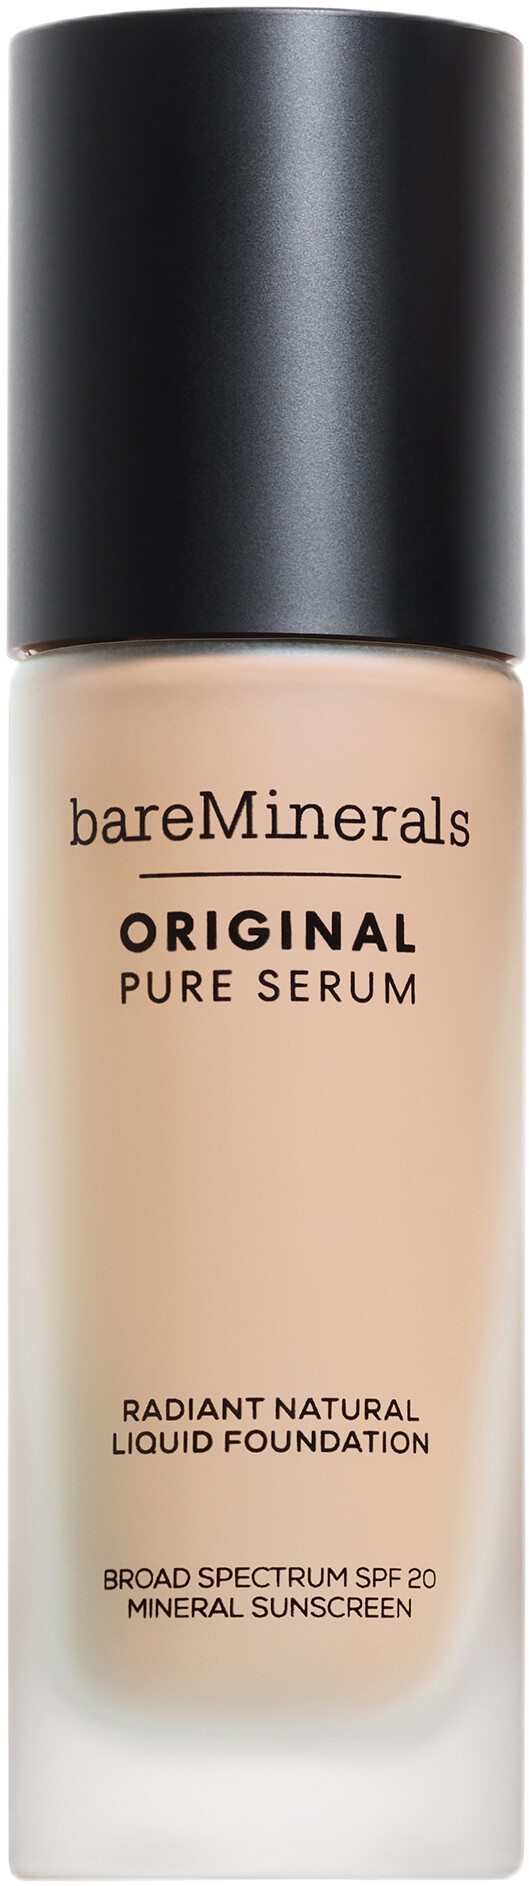 bareMinerals Original Pure Serum Radiant Natural Liquid Foundation SPF20 30ml 1.5 - Fair Cool